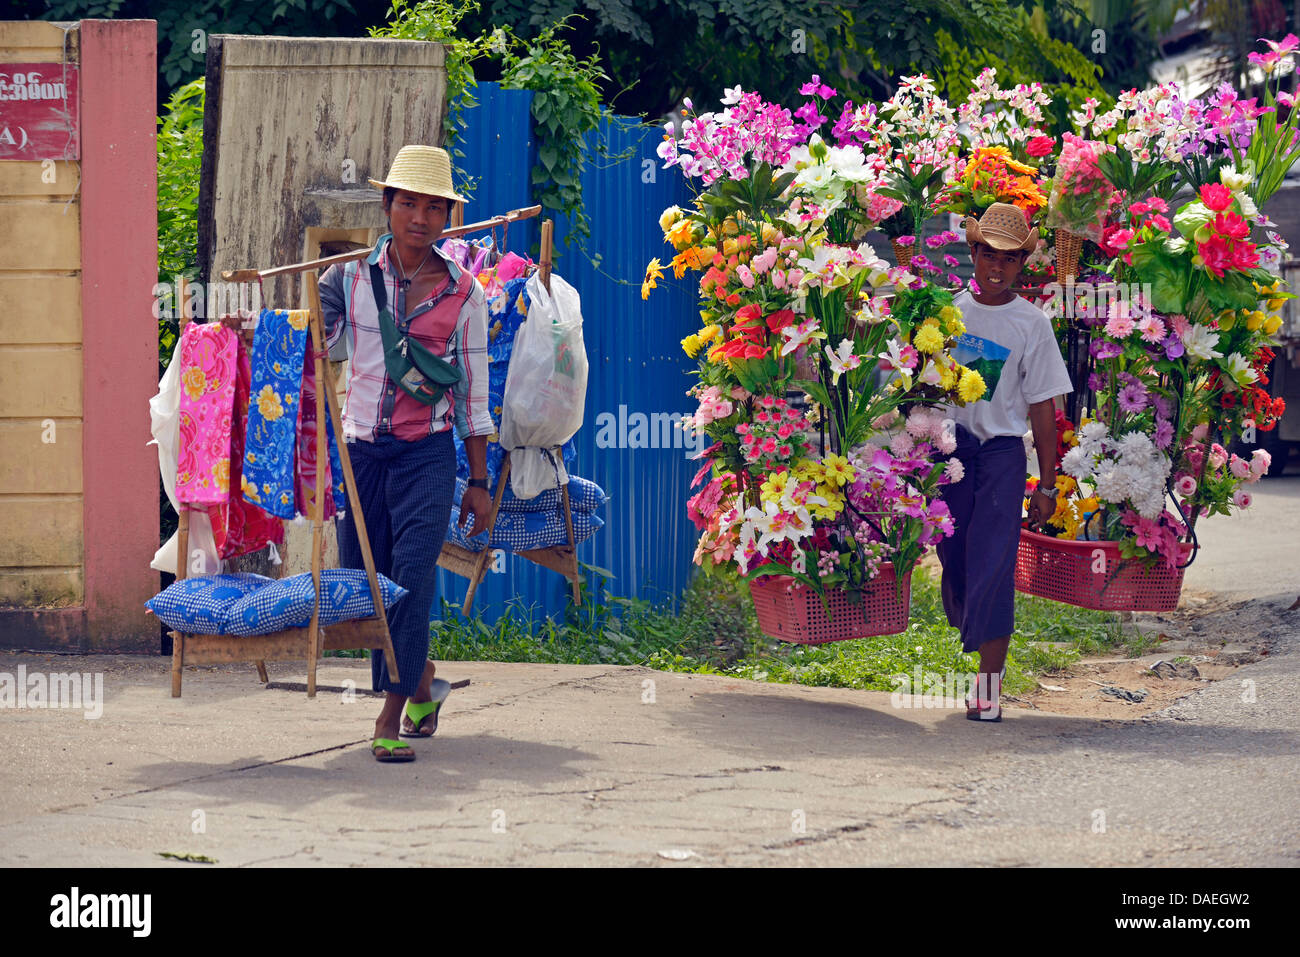 Les jeunes vendeurs de rue vendant des fleurs en plastique et tissus, Birmanie, Yangon Banque D'Images